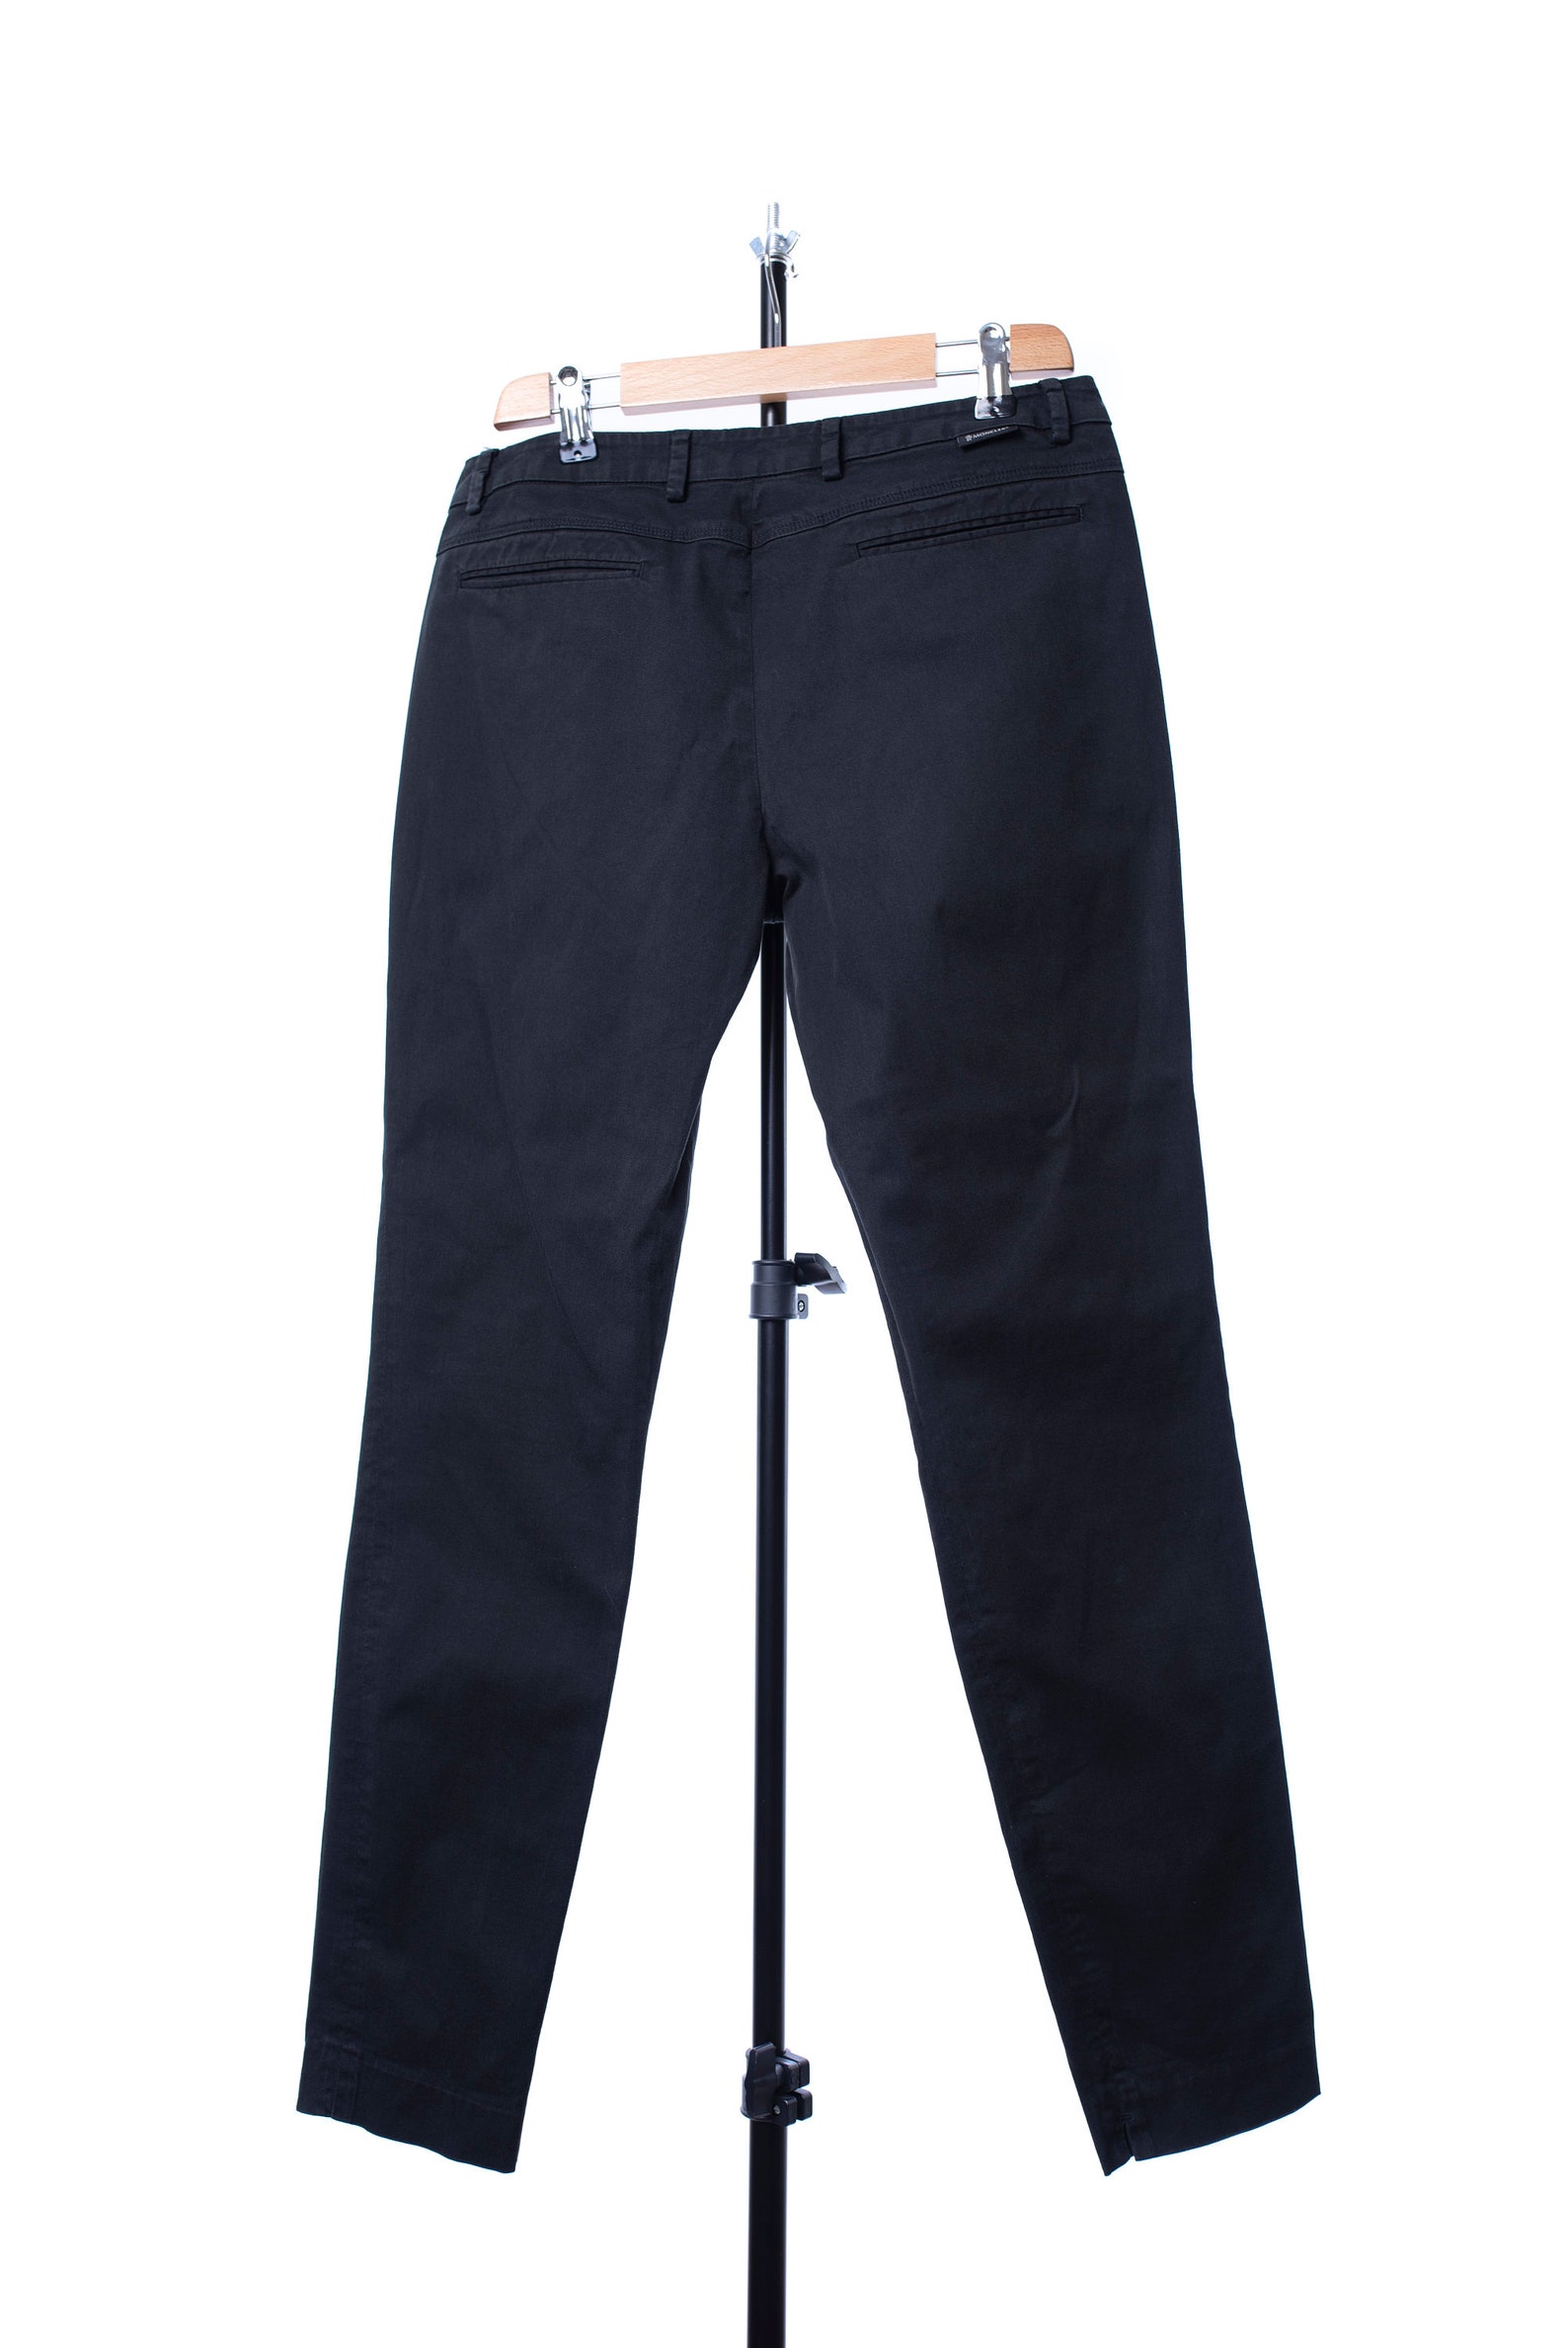 Women's Moncler Pantalone Trousers Black Pants Size 44 | Etsy